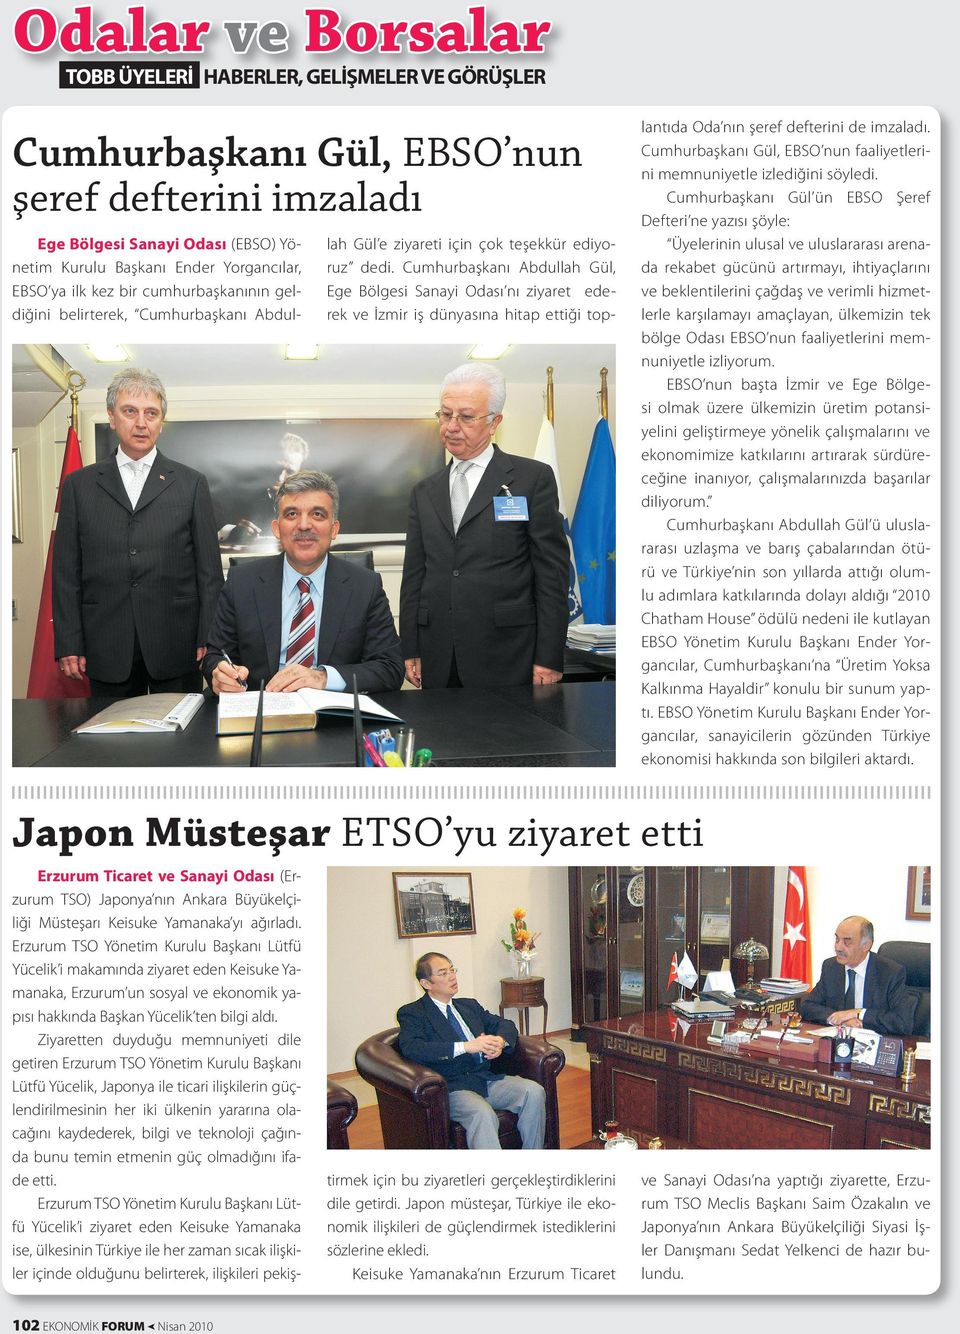 Cumhurbaşkanı Abdullah Gül, Ege Bölgesi Sanayi Odası nı ziyaret ederek ve İzmir iş dünyasına hitap ettiği top- lantıda Oda nın şeref defterini de imzaladı.